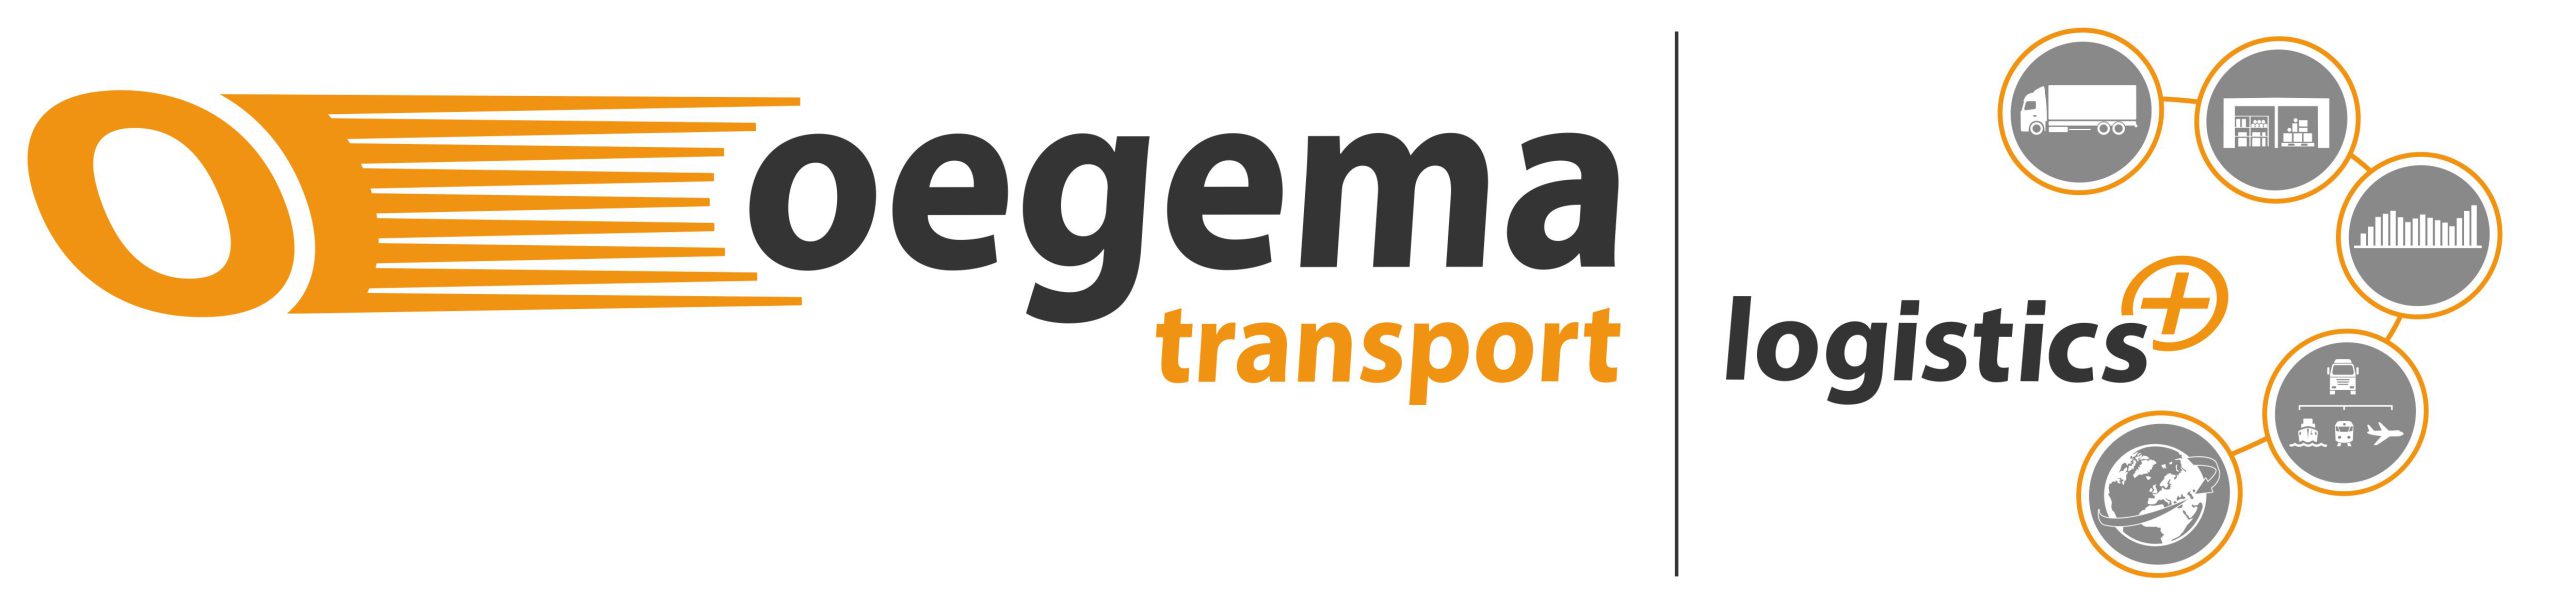 Oegema en Logistics logo